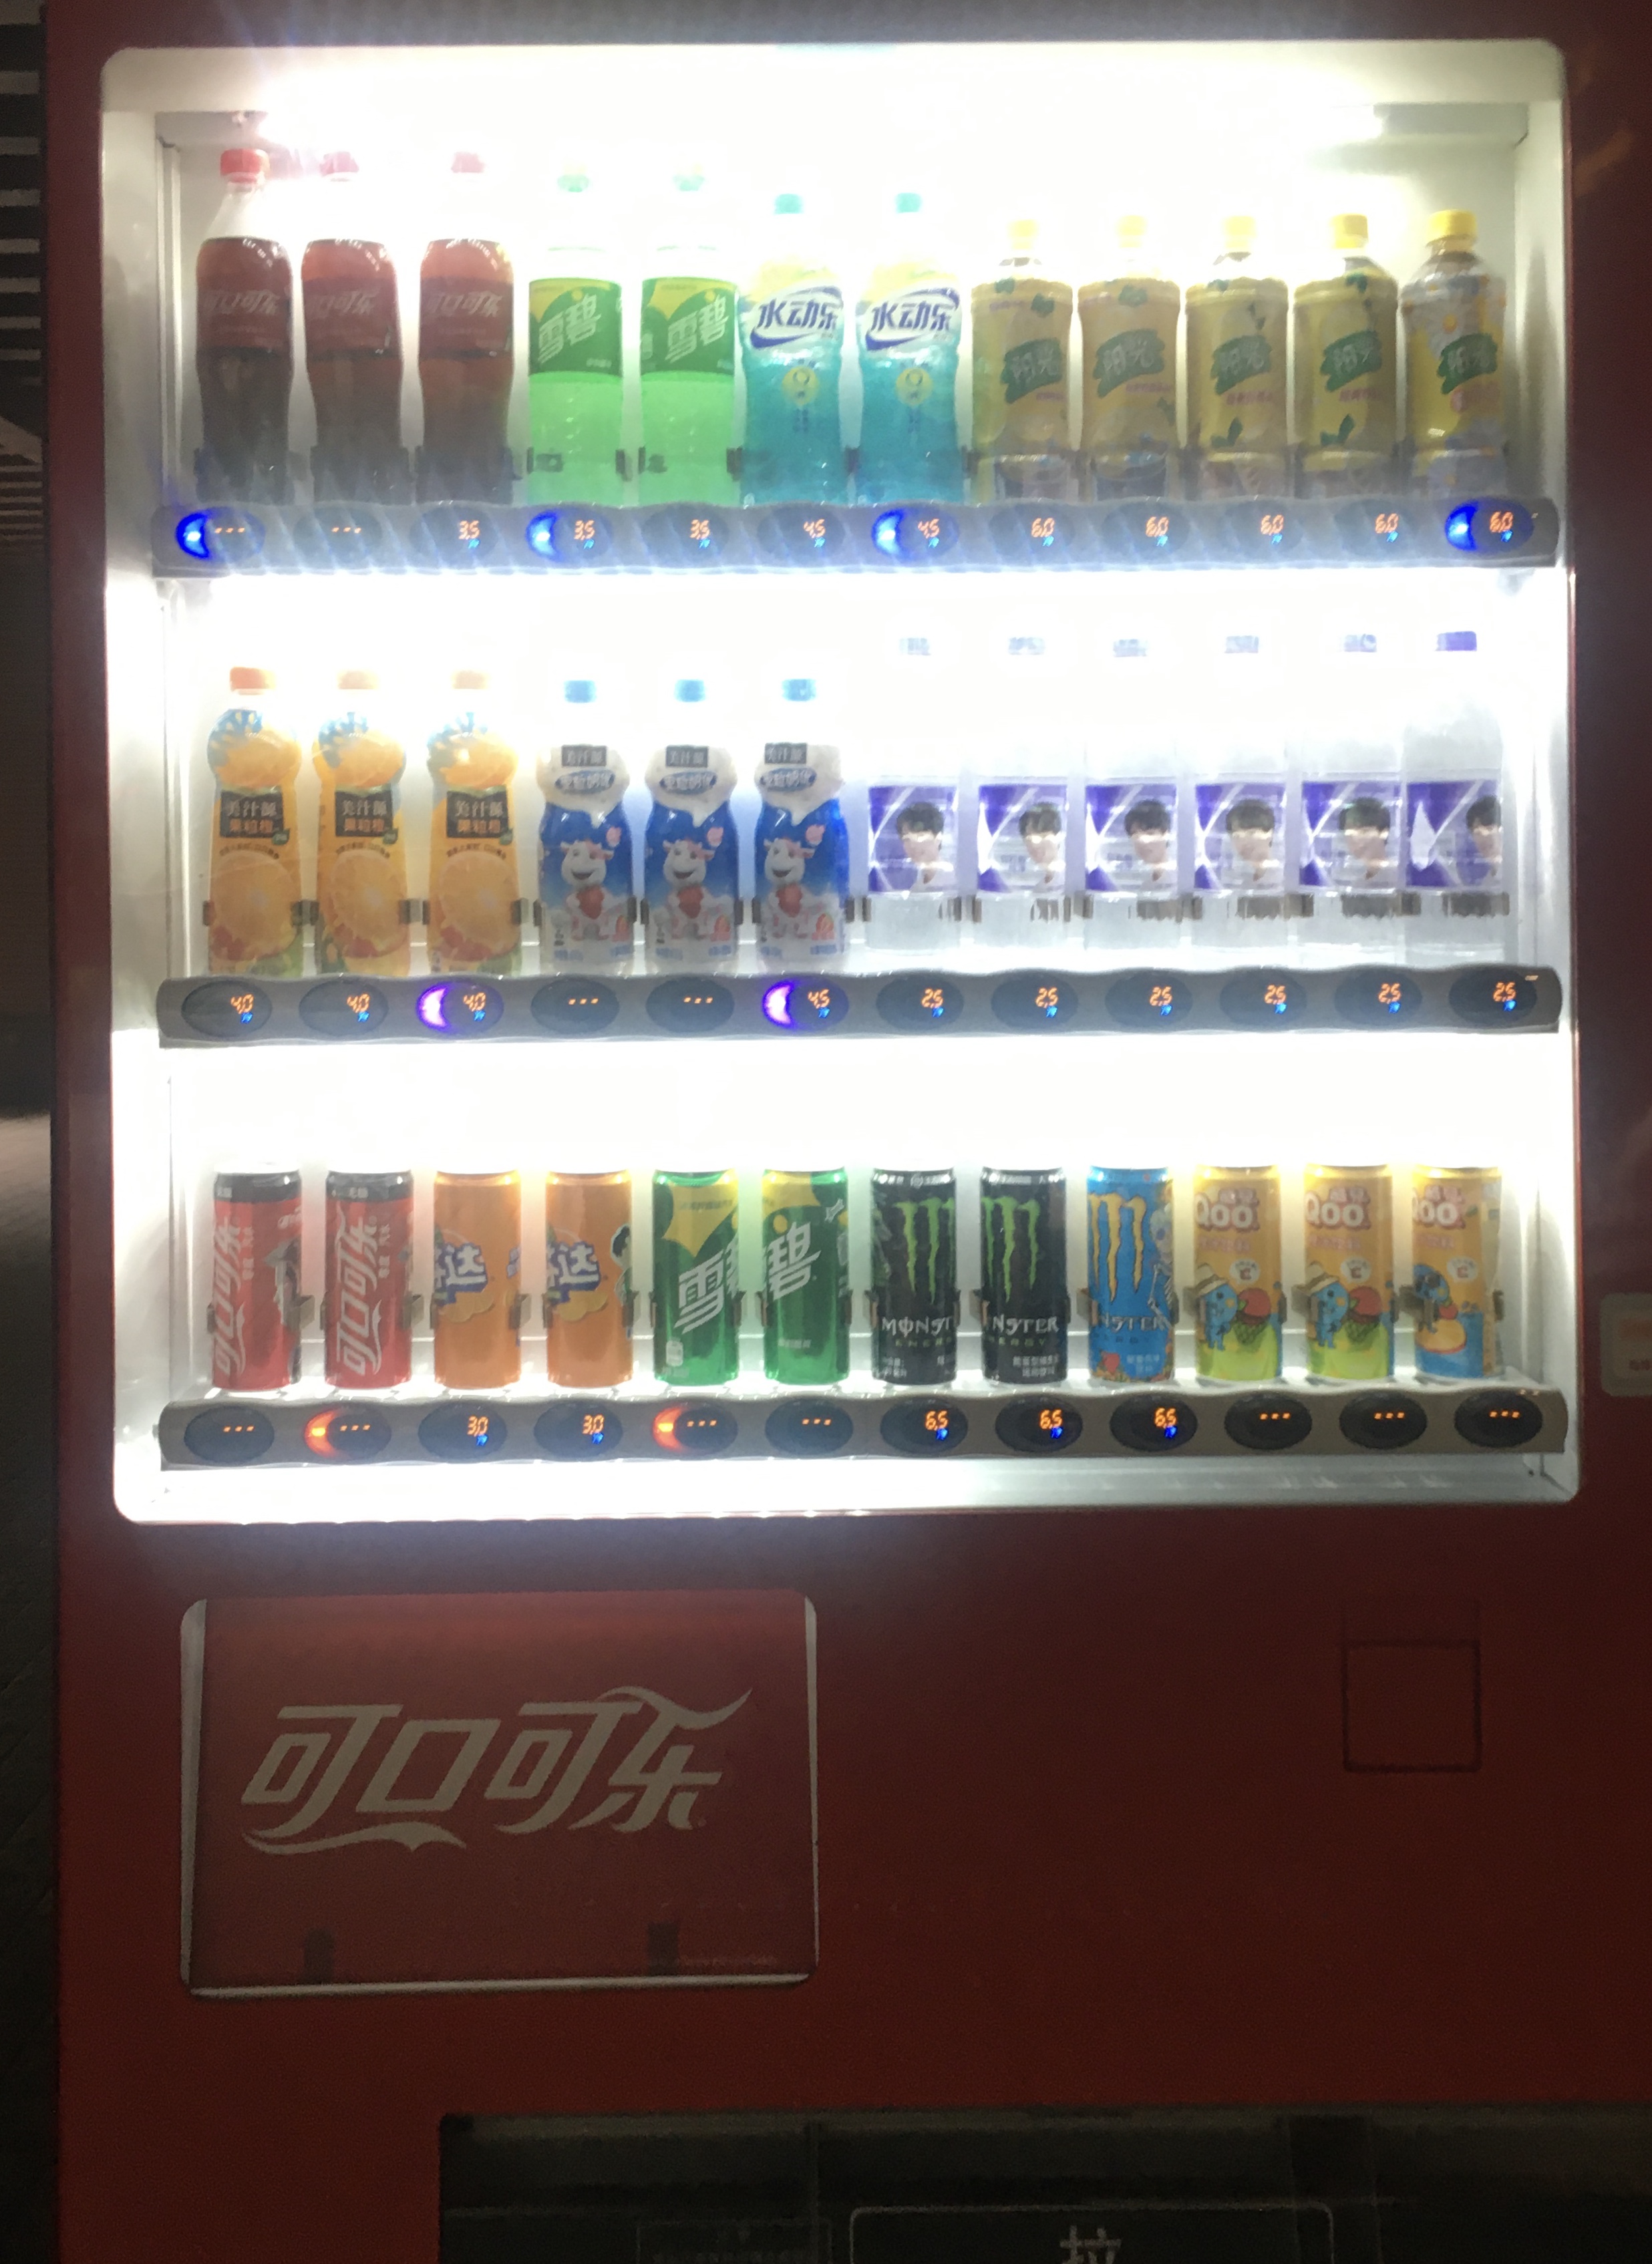 魔爪是不是也是可口可乐的 在可口可乐家族的贩卖机里看到了 晋江文学城网友交流区